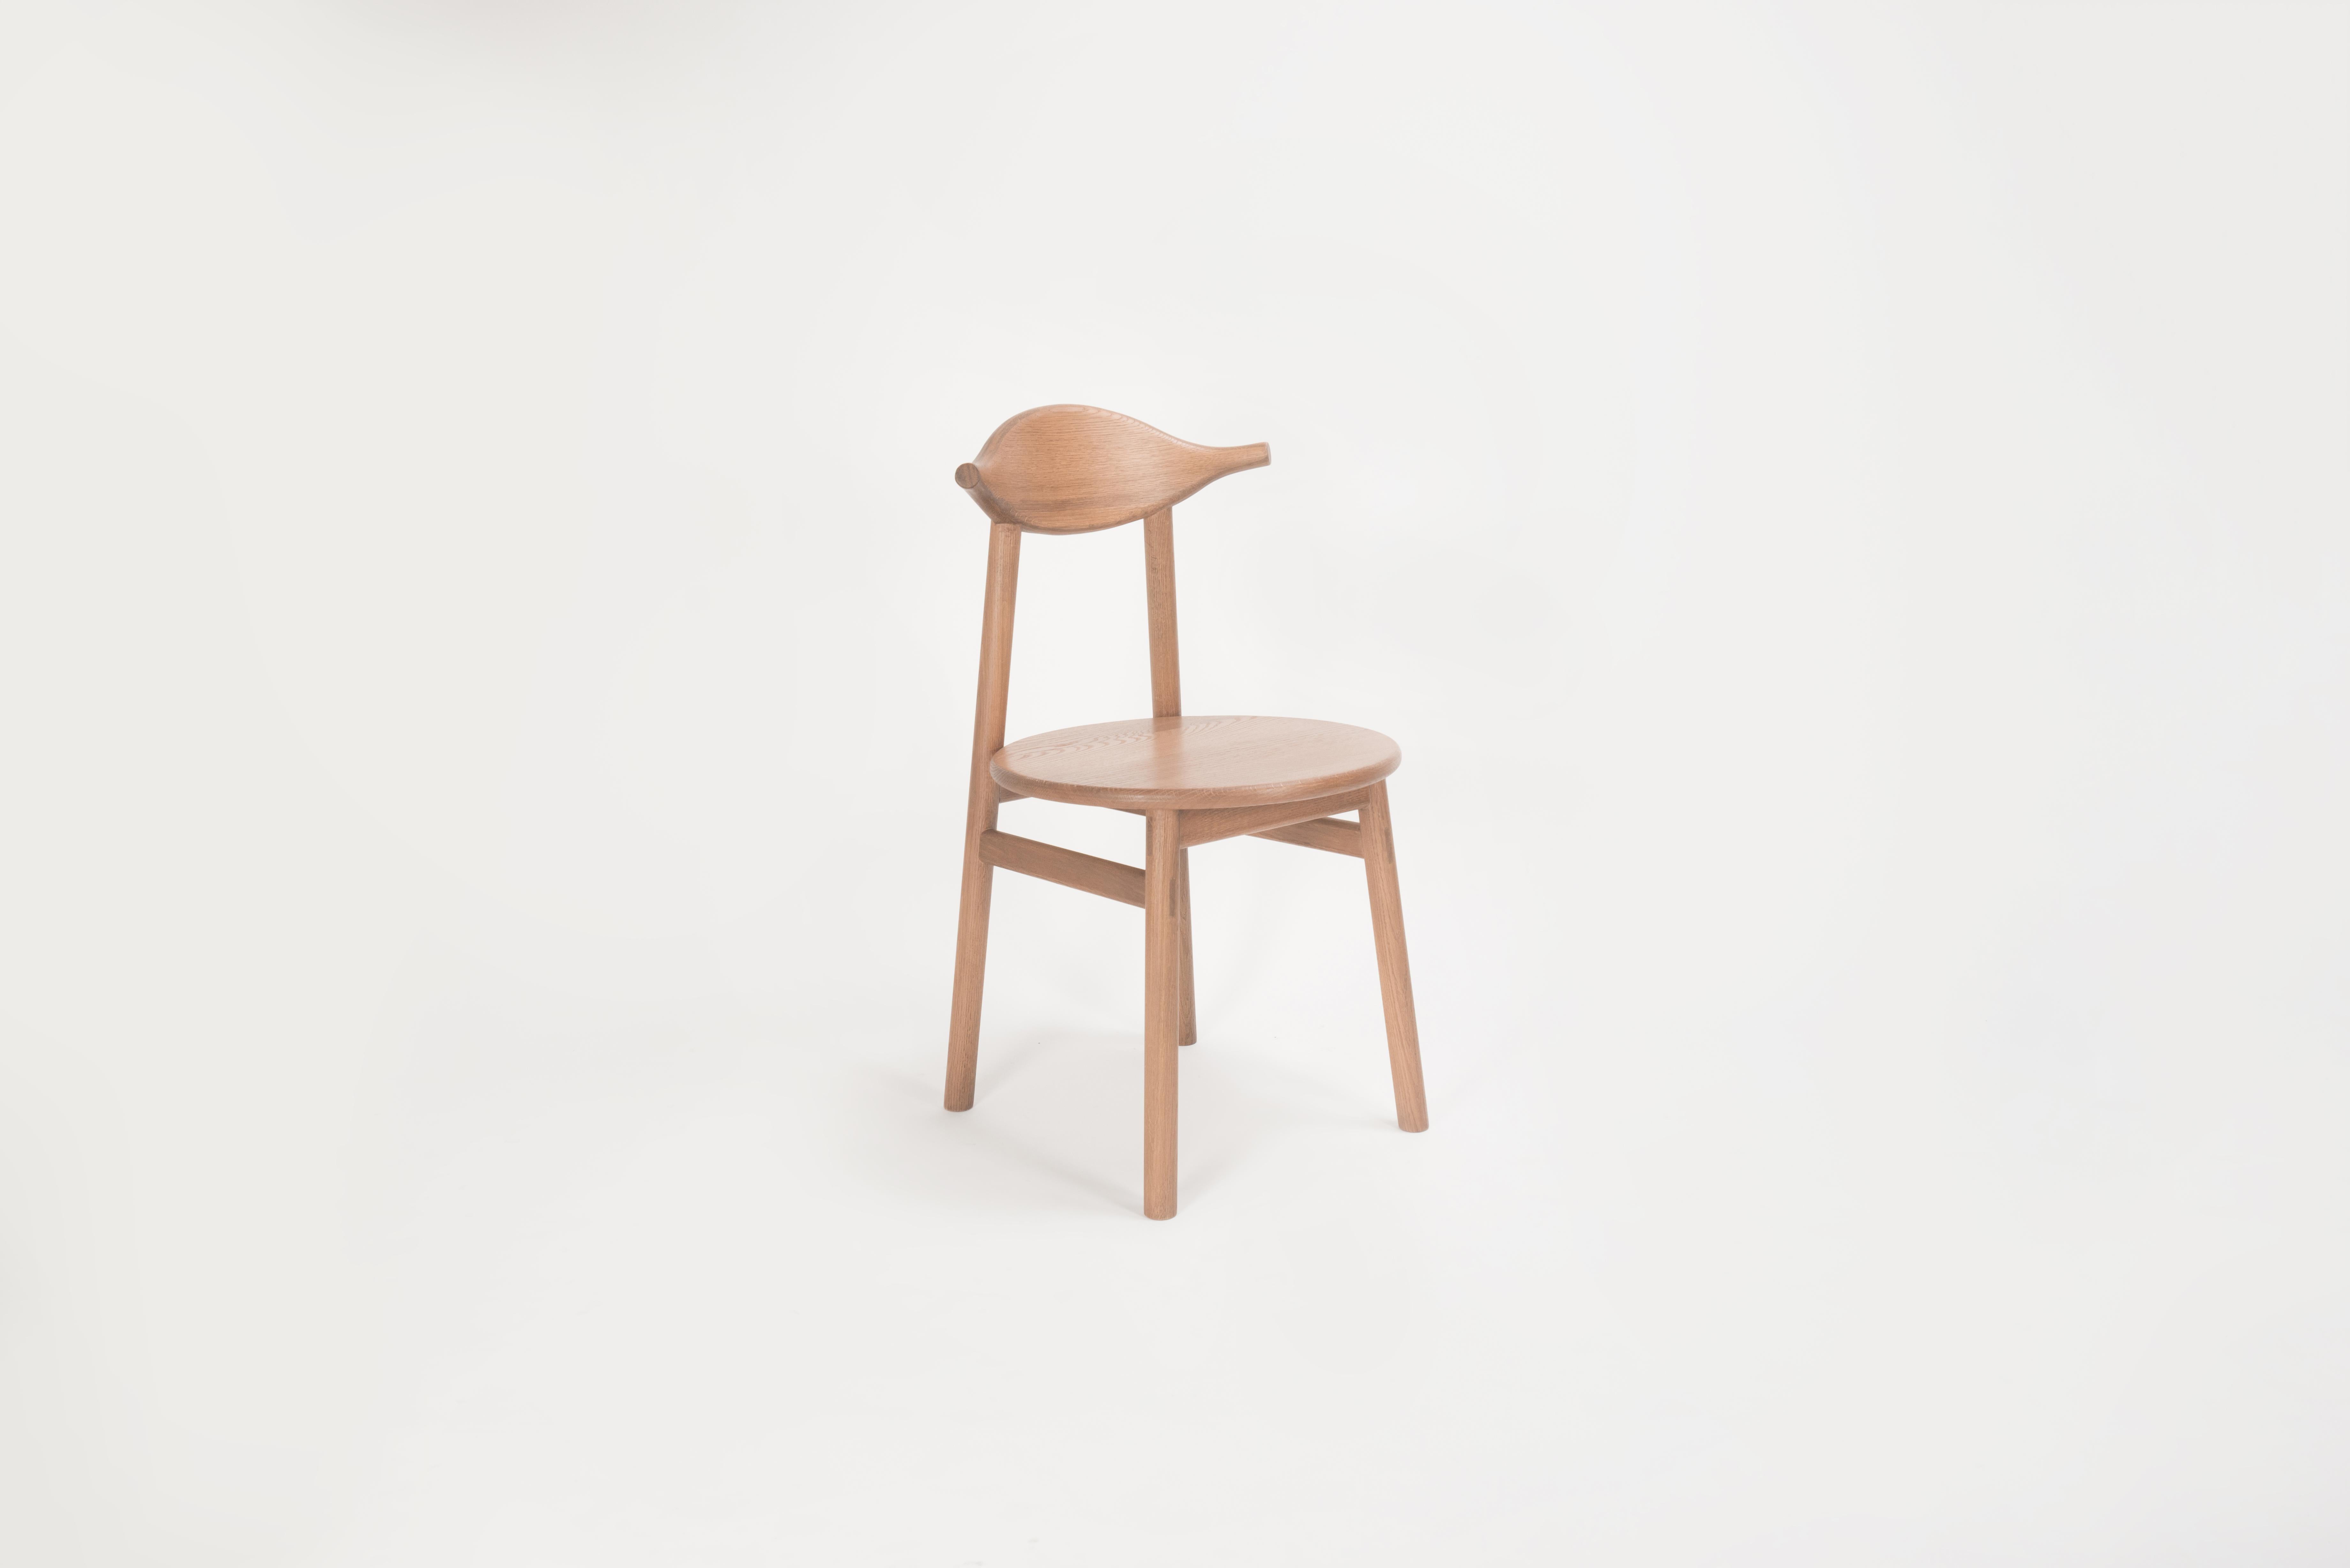 Sun at Six ist ein Studio für zeitgenössisches Möbeldesign, das mit traditionellen chinesischen Tischlermeistern zusammenarbeitet, um unsere Stücke in Handarbeit zu fertigen, wobei traditionelle Tischlerarbeiten verwendet werden. Der Stuhl Ember ist